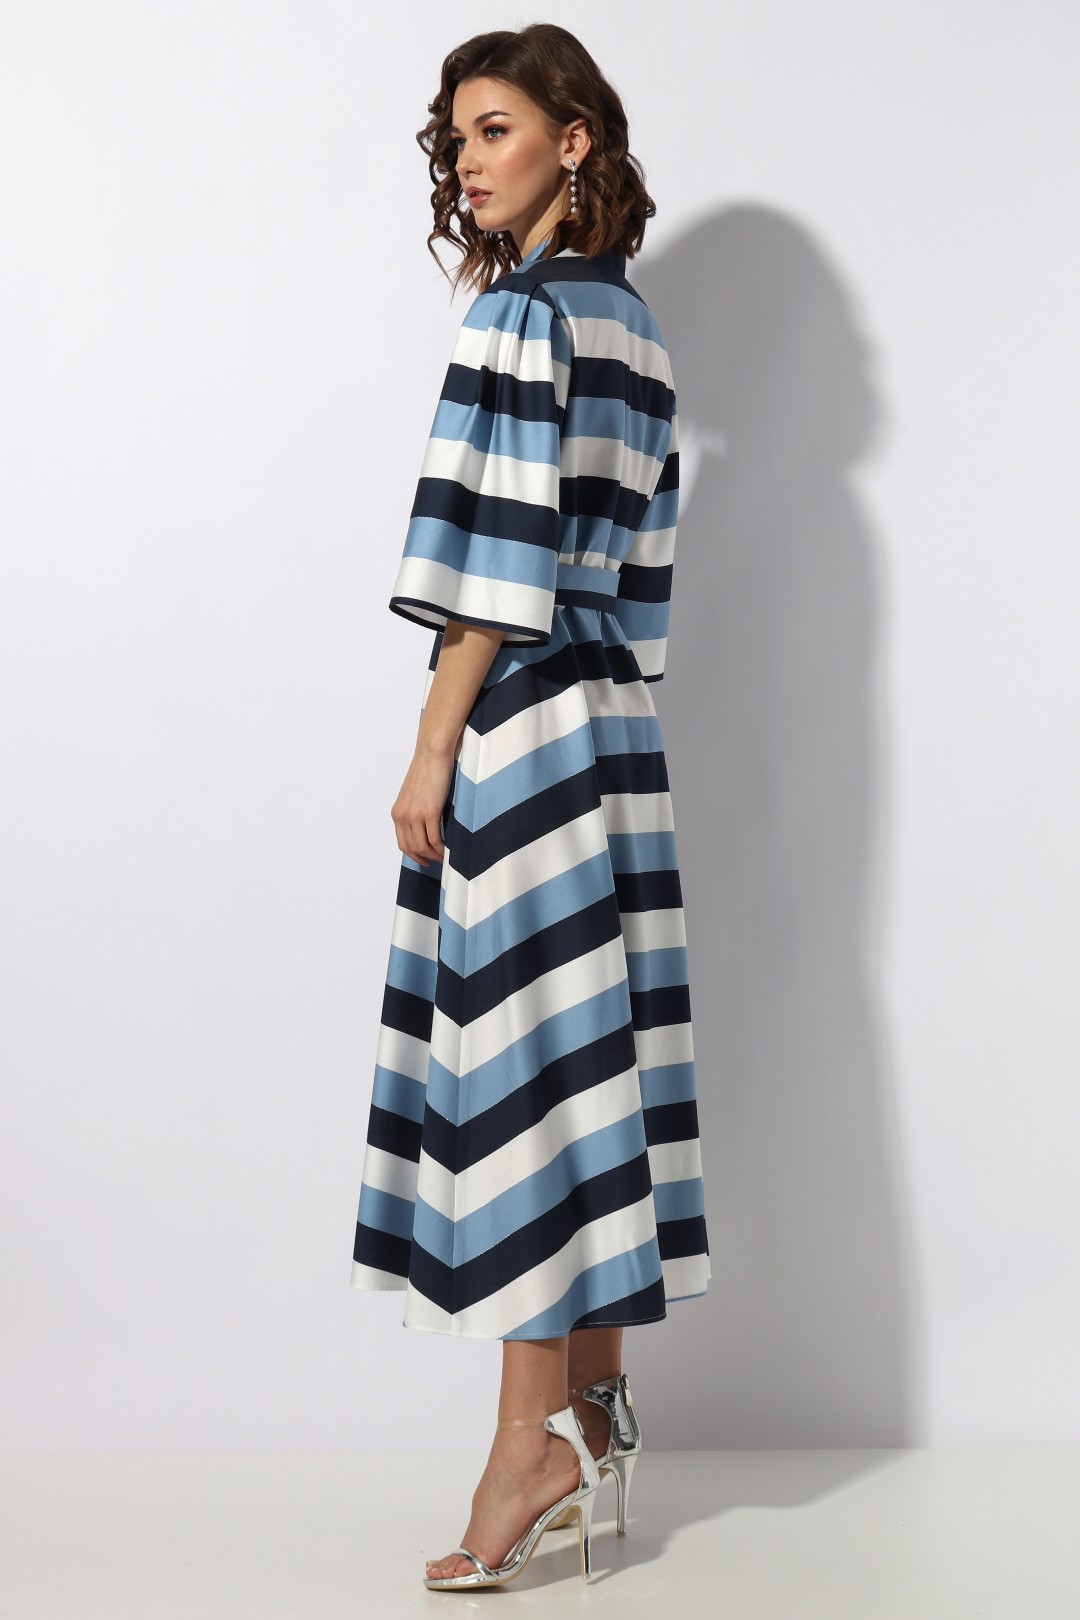 Платье МиА-Мода 1232 синяя полоска